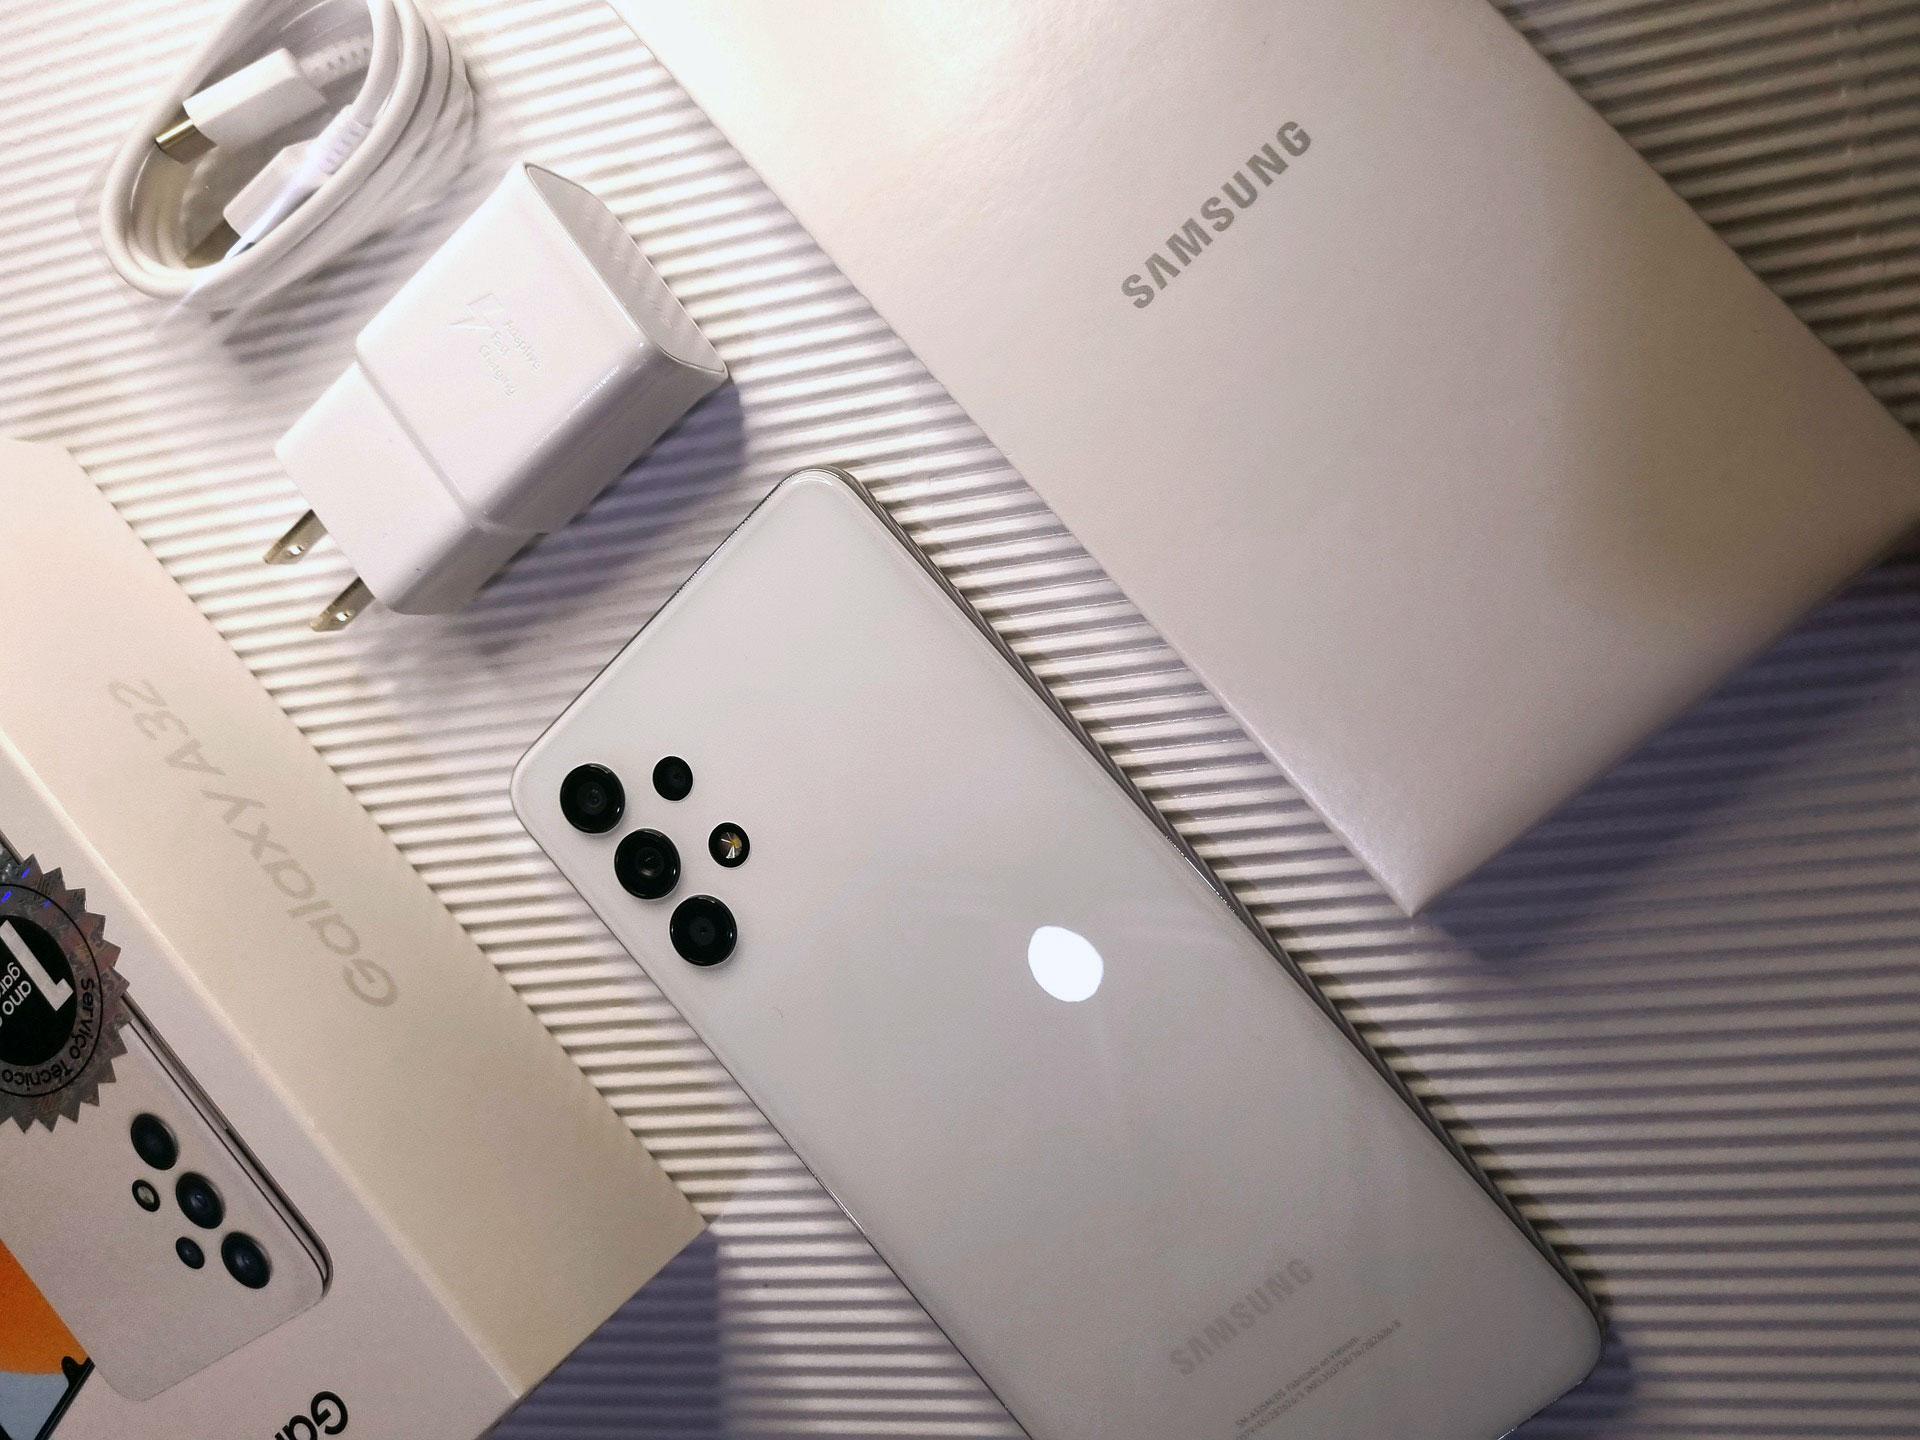 Samsung опережает по обновлениям даже Google – теперь 4 года для смартфонов бренда